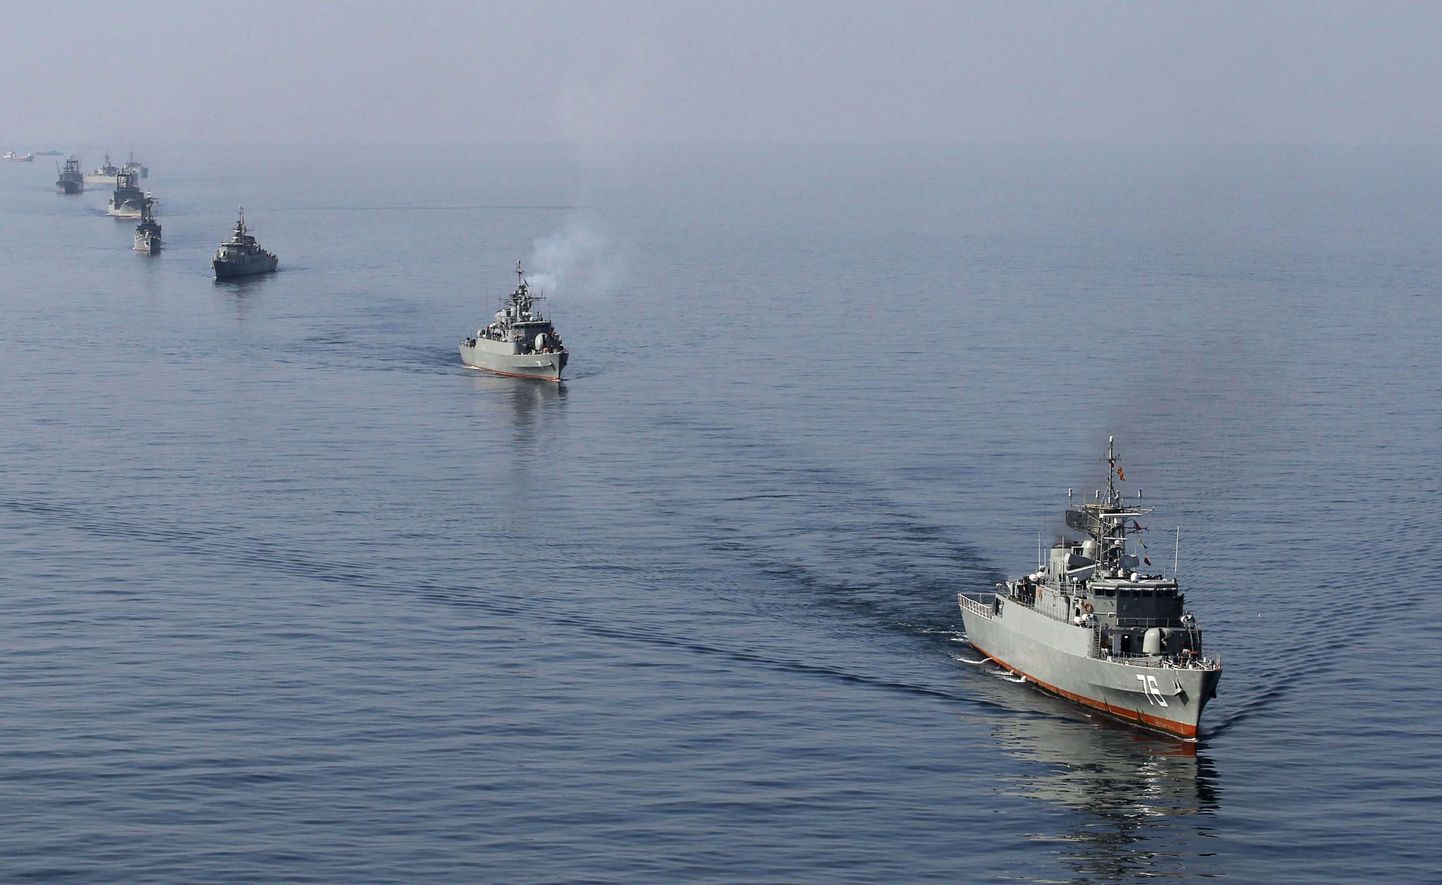 Iraani sõjalaevad Hormuze väinas toimunud mereväeõppuste ajal.